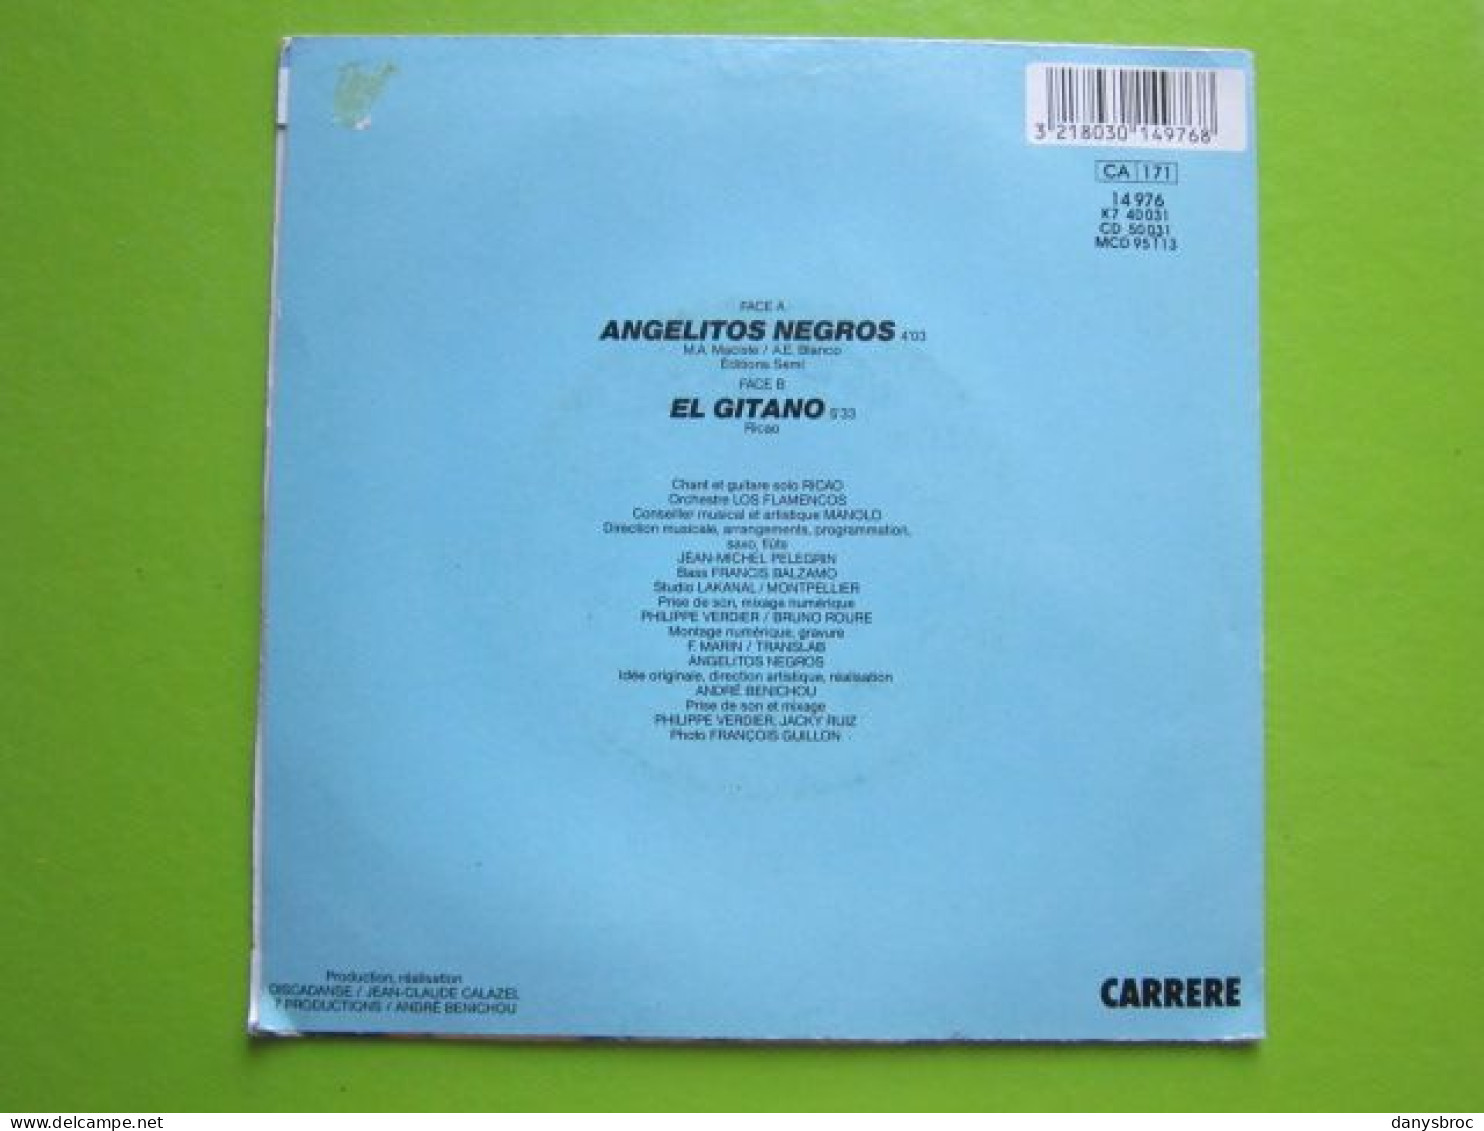 RICAO - EL GITANO - ANGELITOS NEGROS - Disque Vinyle 45 T - Autres - Musique Espagnole